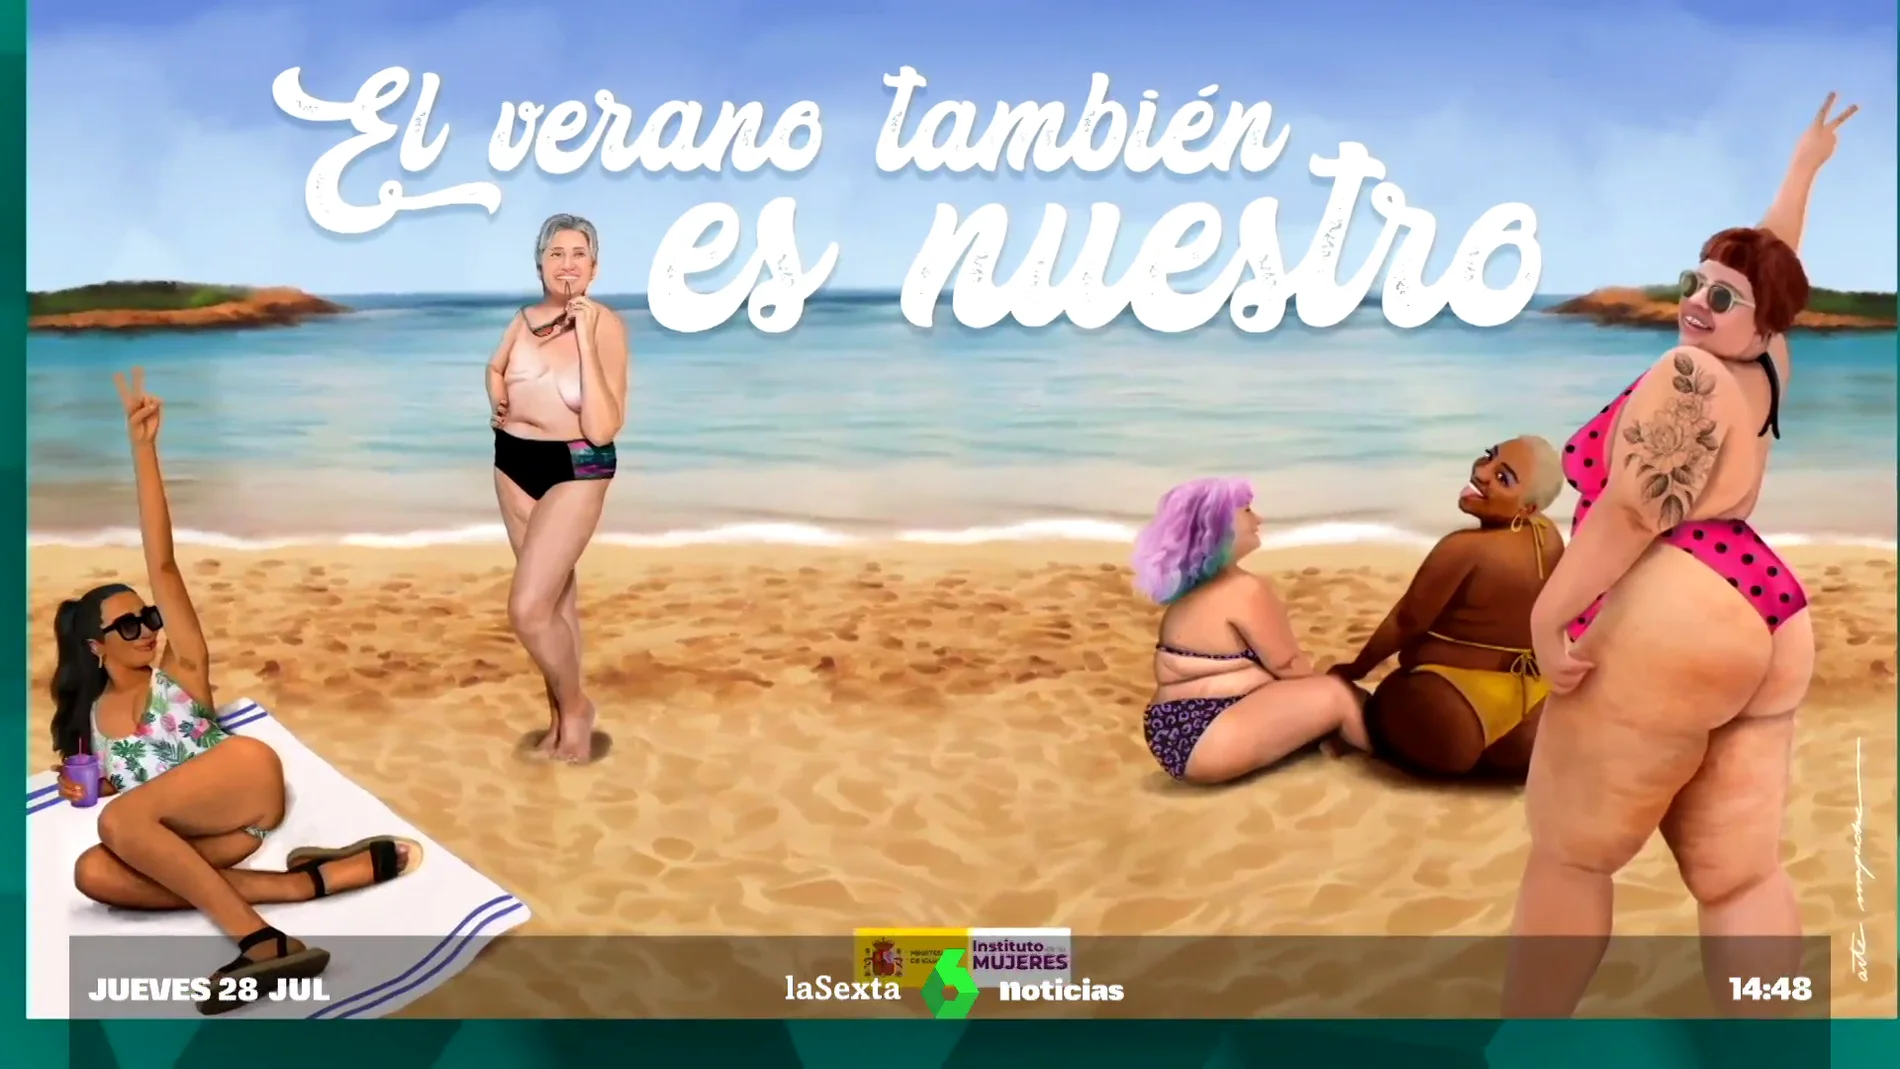 Así ven las mujeres el cartel de Igualdad que reivindica que "todos los cuerpos son válidos" en la playa